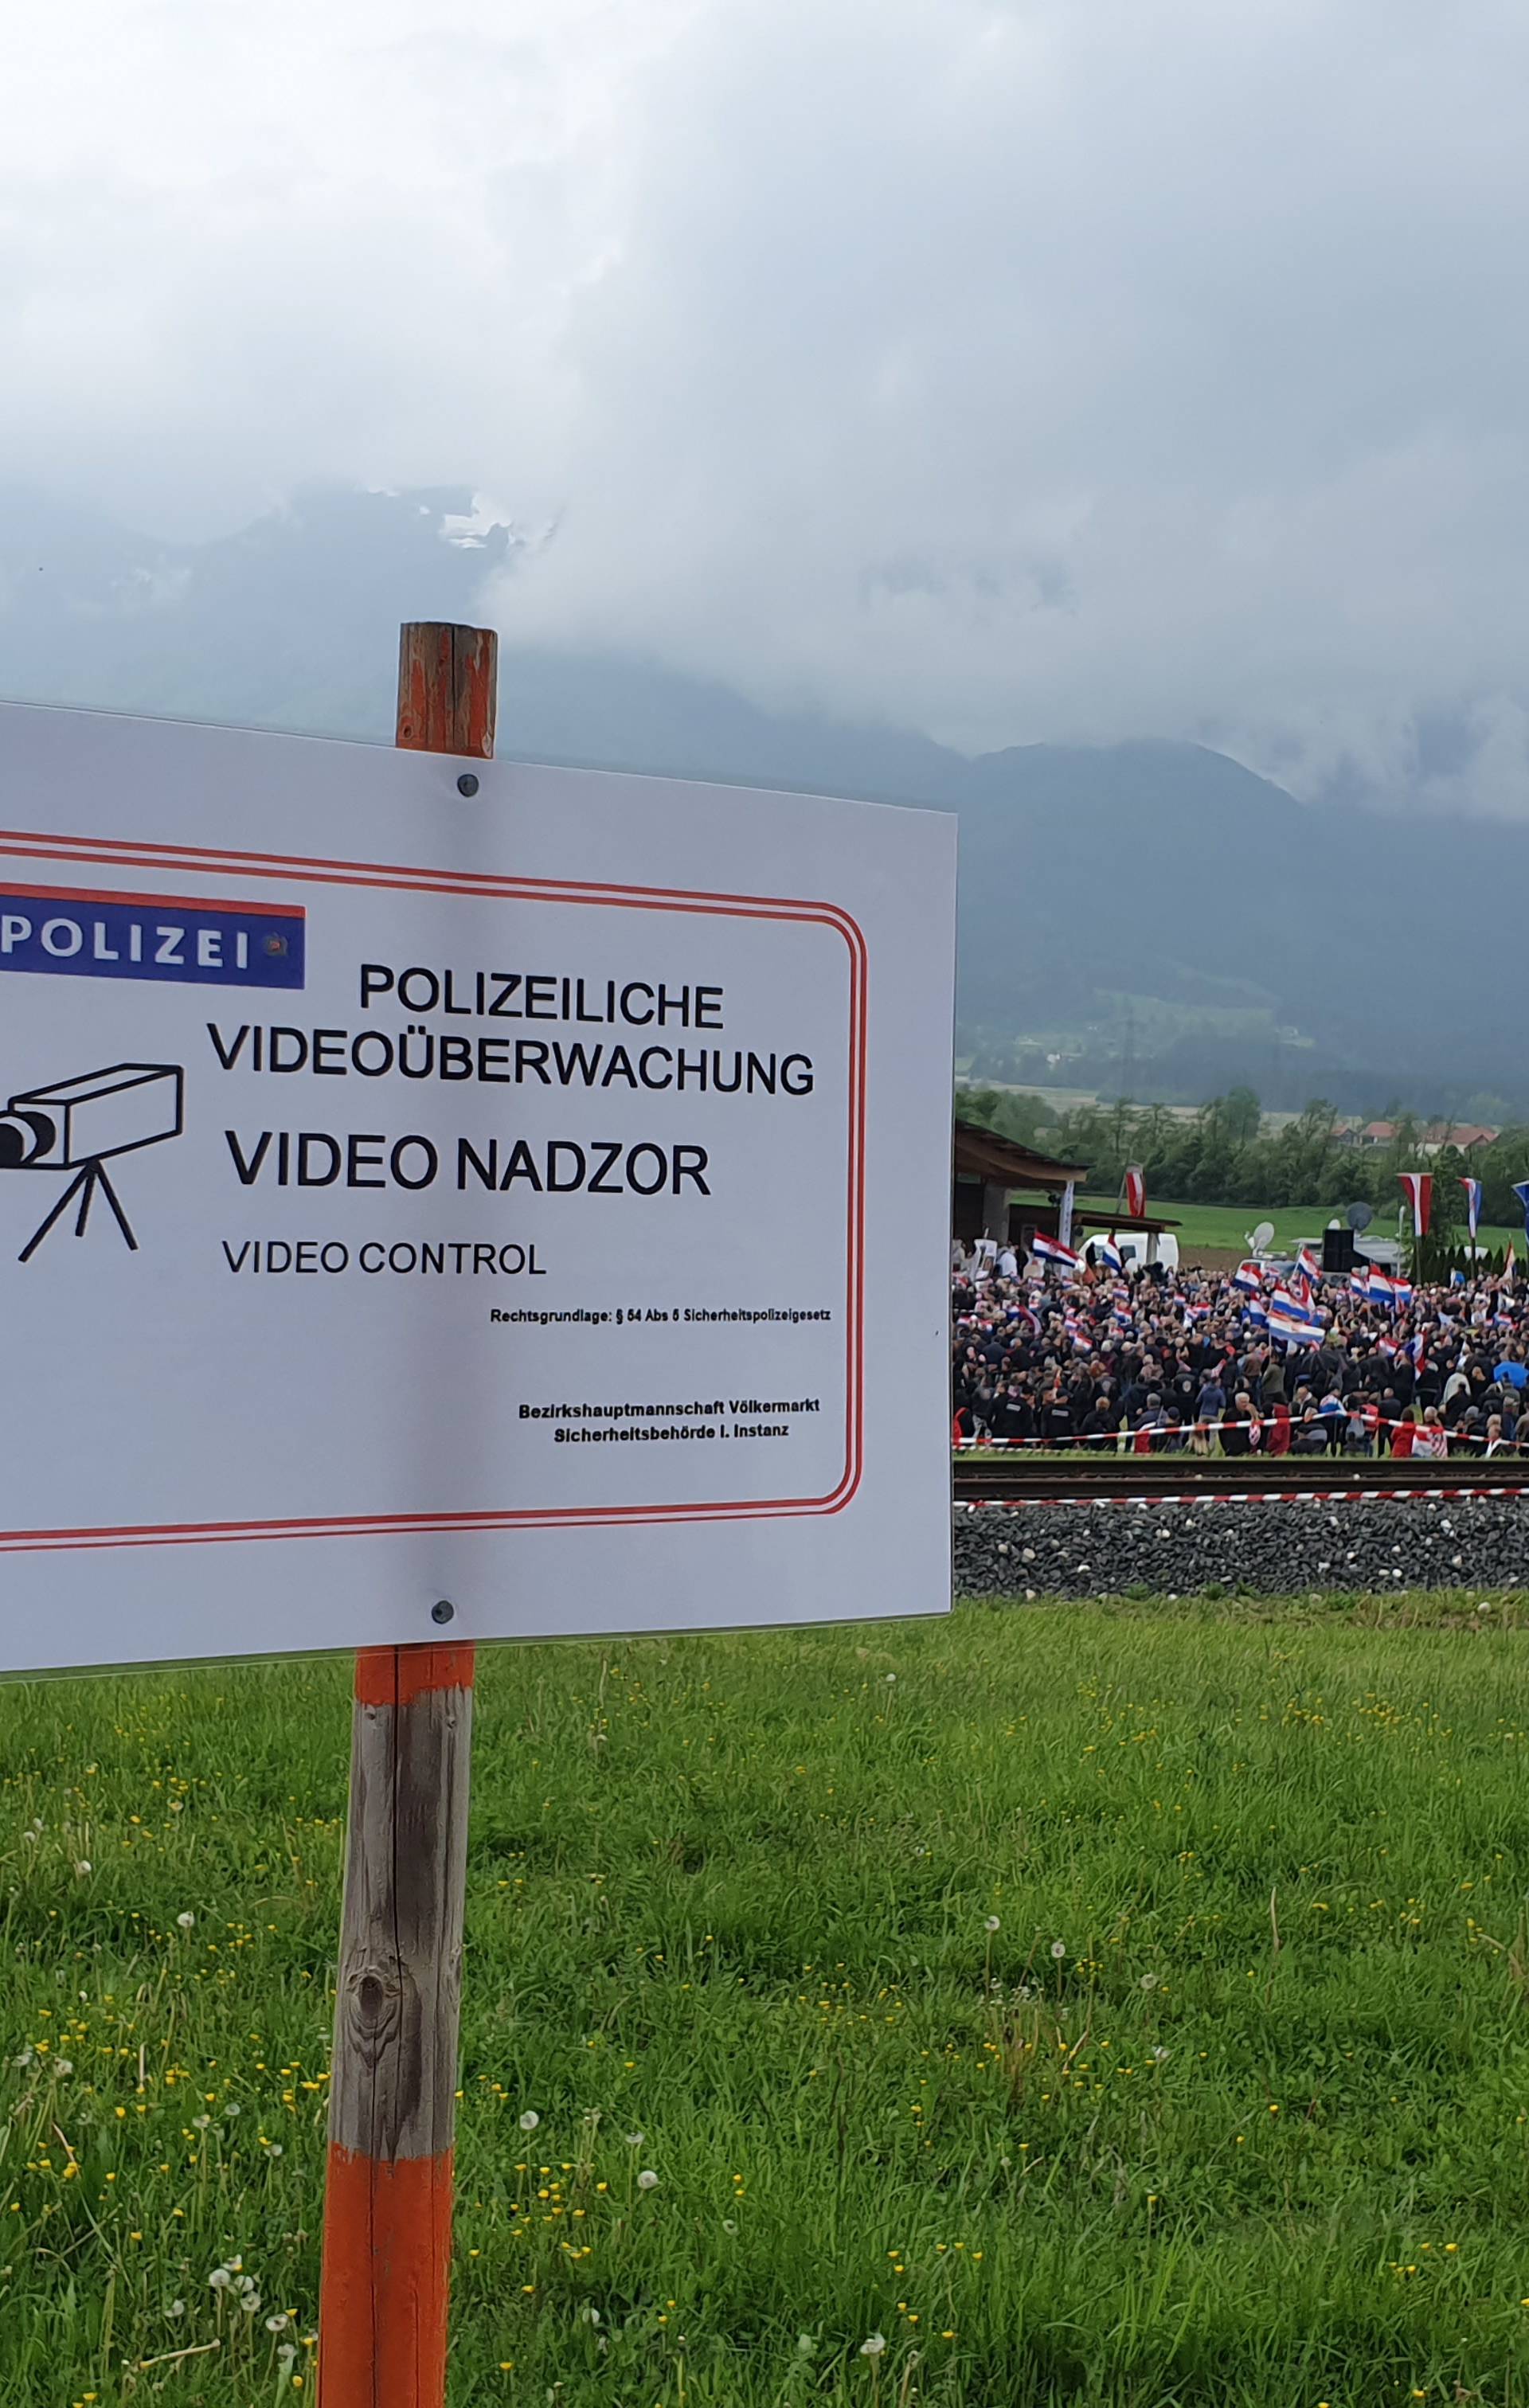 Digao desnicu u zrak: Hrvatu (48) zabranili ulaz u Austriju